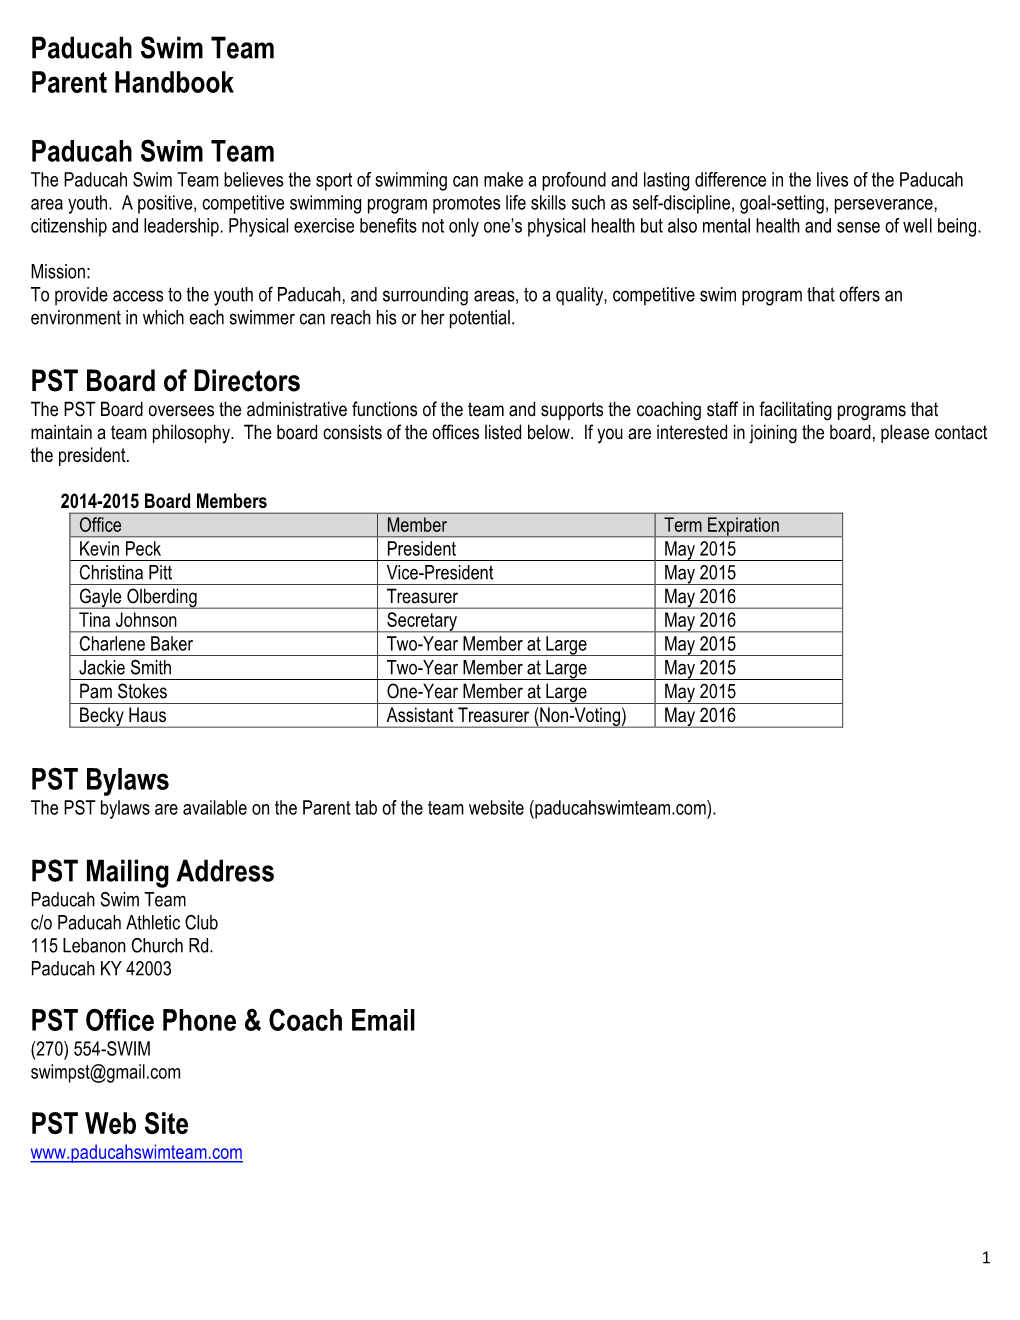 PST Parent Handbook 2014-2015.Pdf